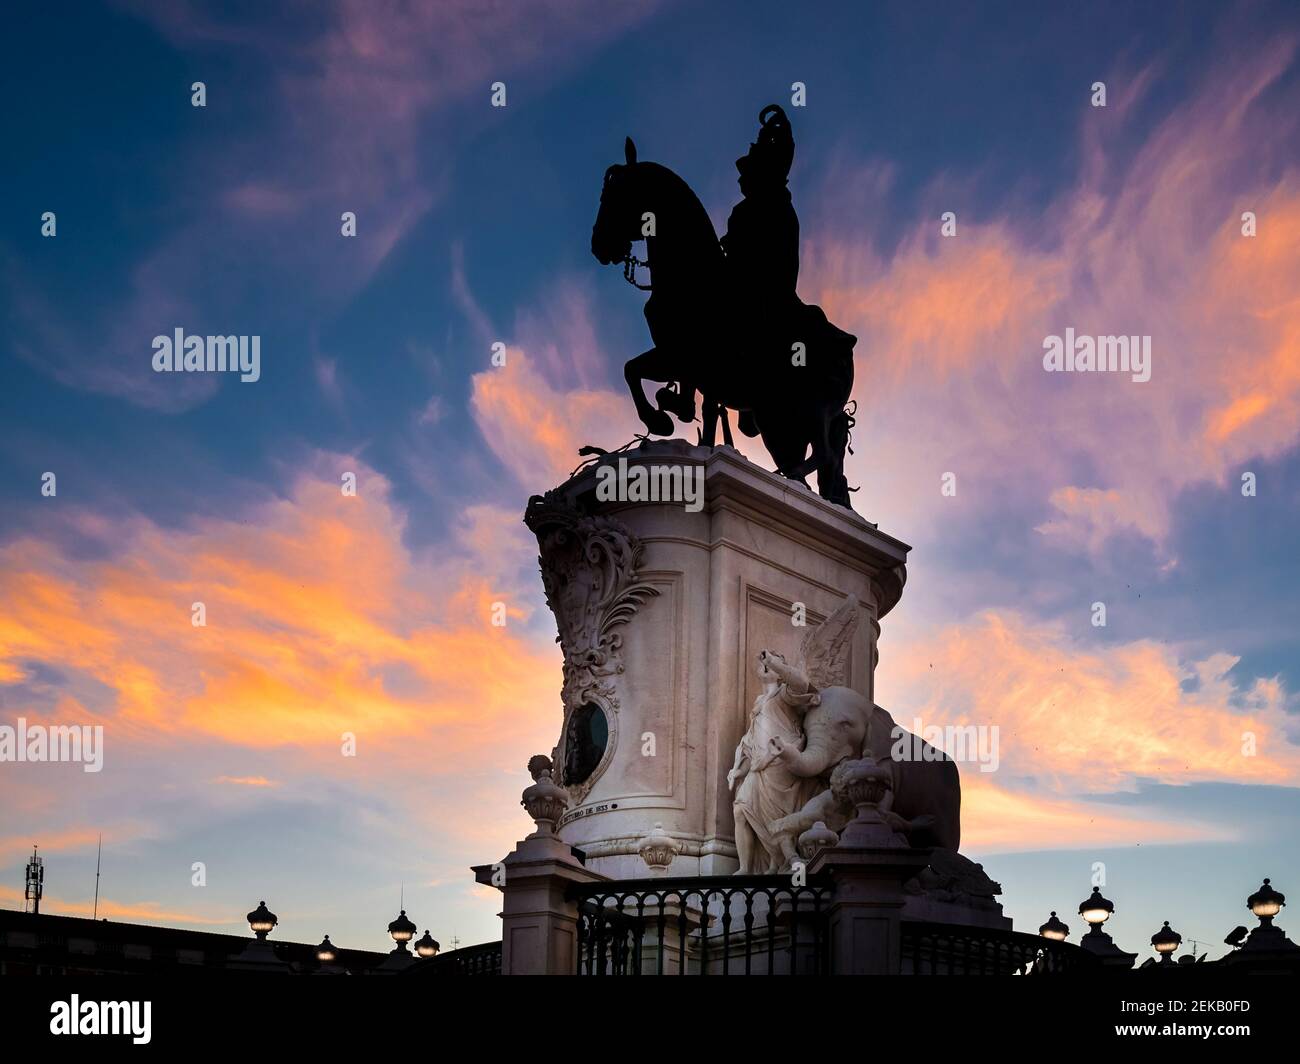 Portugal, province d'Estrémadure, Lisbonne, Silhouette de la statue équestre du roi José I au crépuscule Banque D'Images